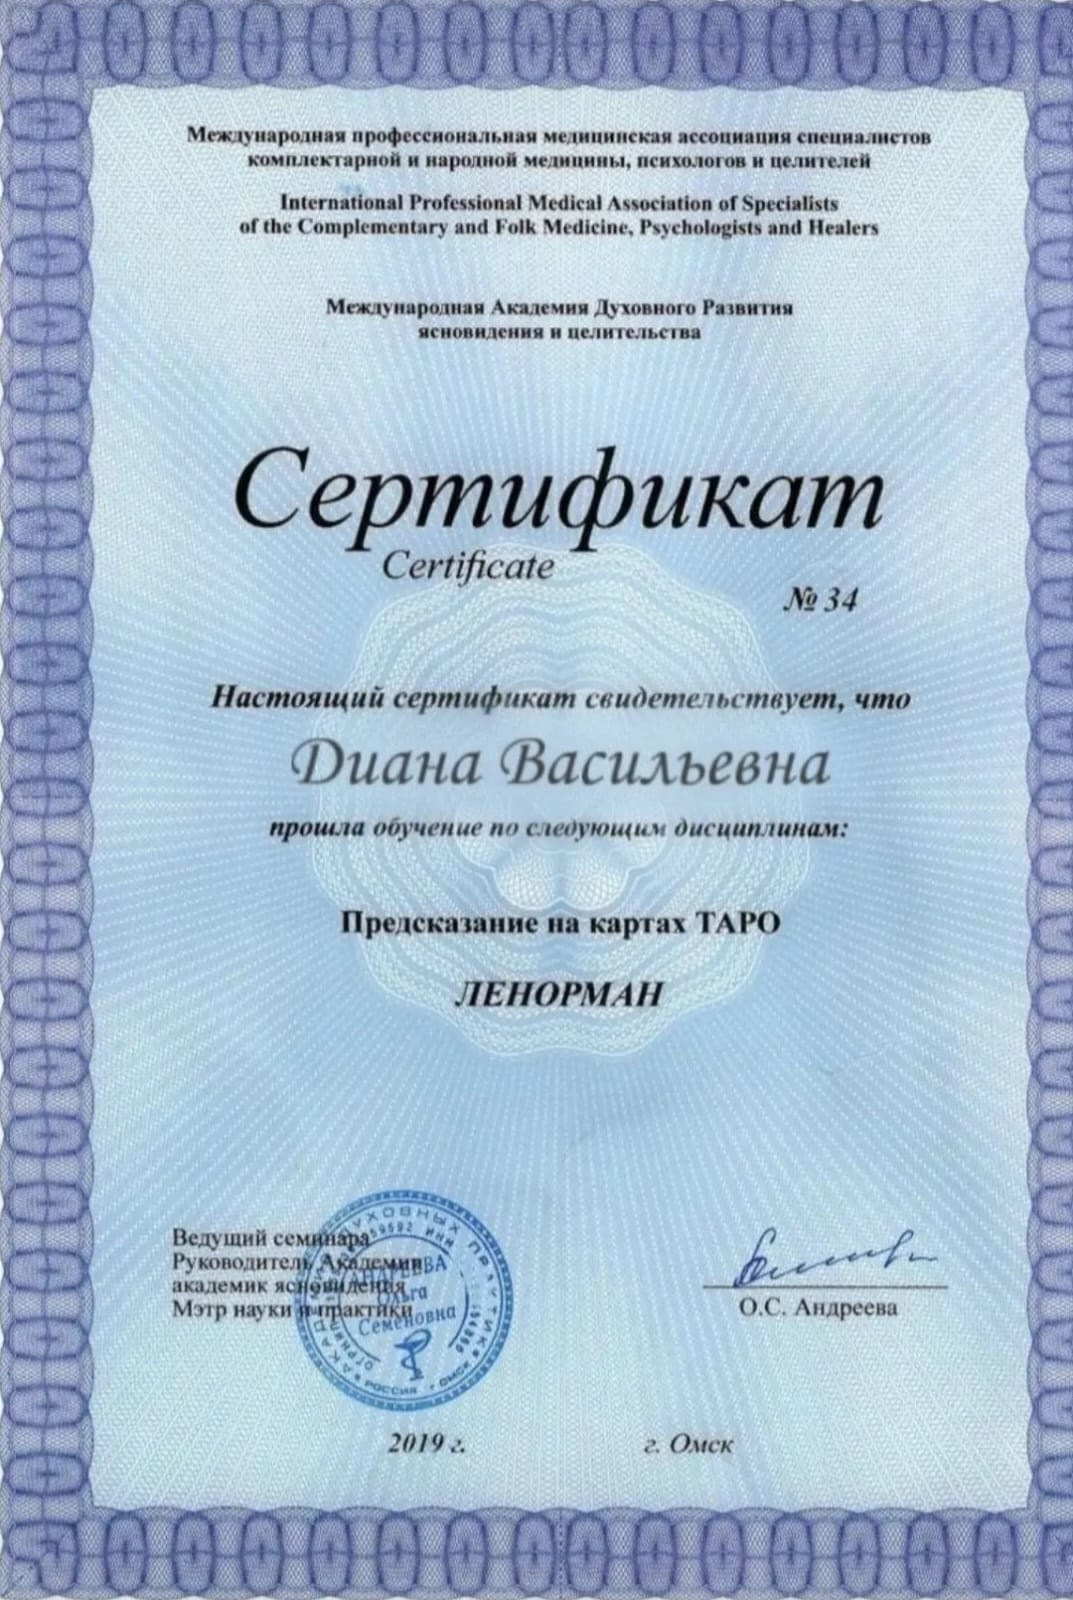 Сертификат гадалки Дианы